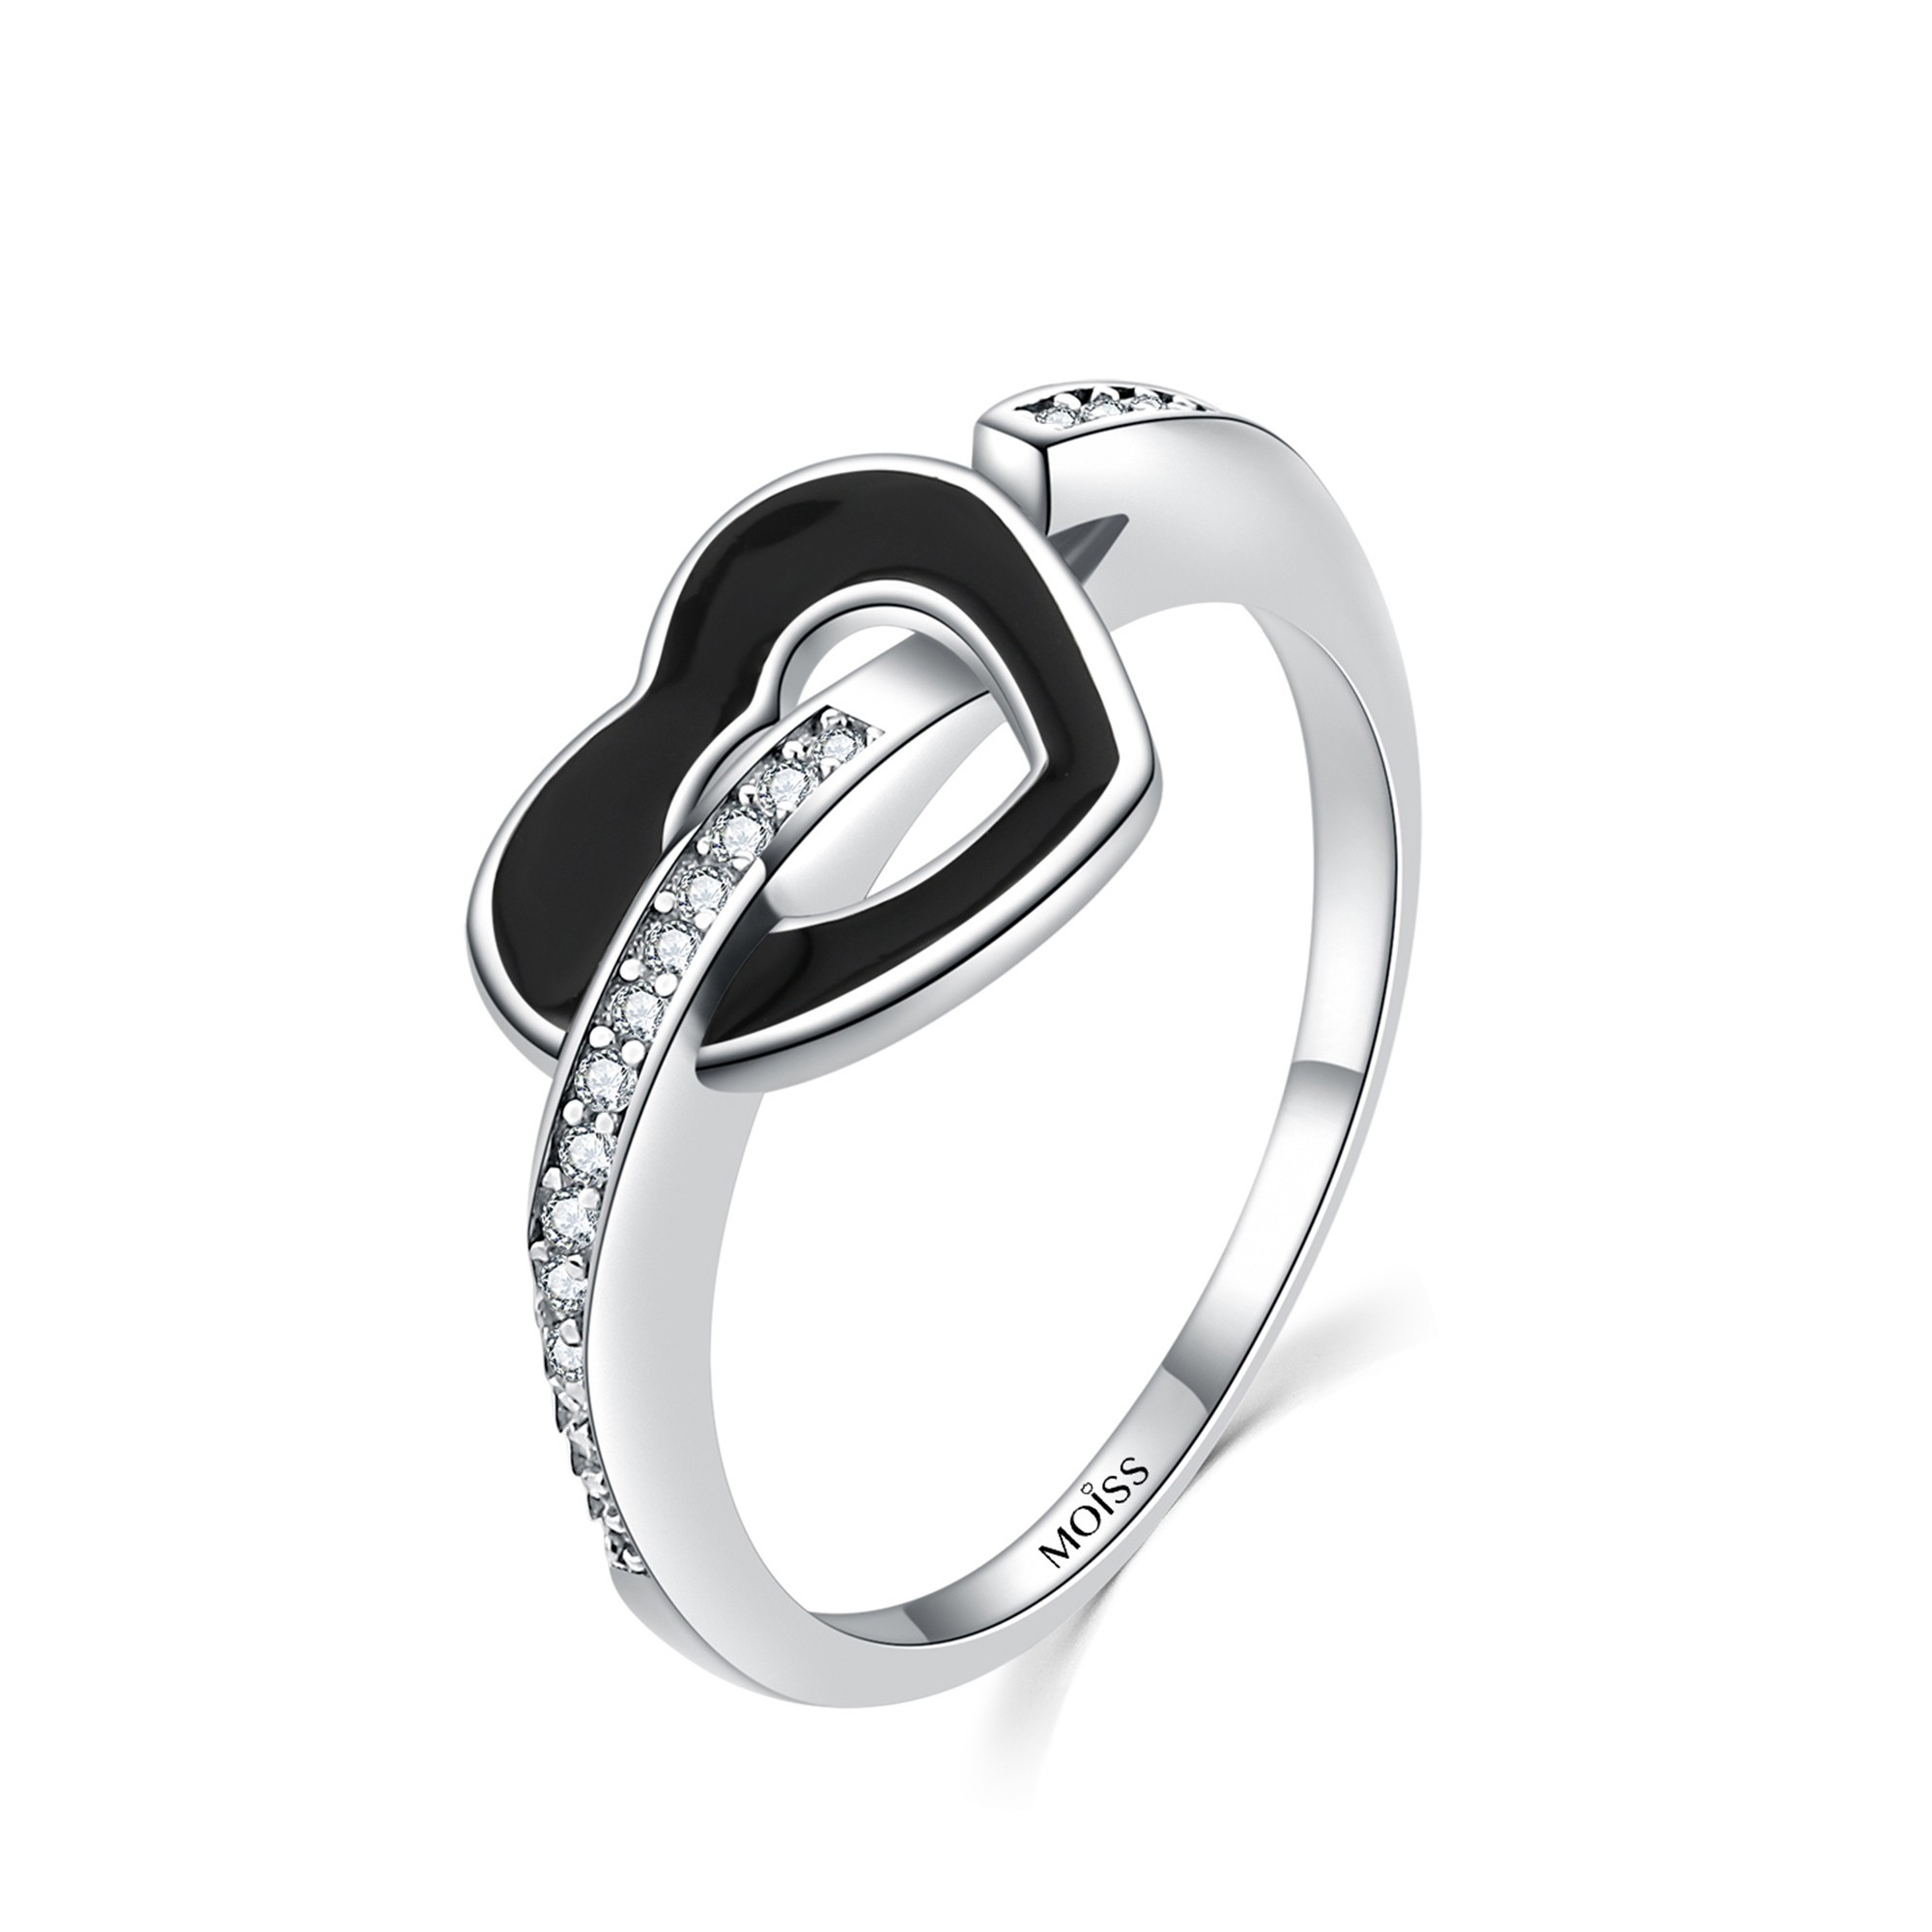 MOISS Moiss stříbrný prsten ČERNÉ SRDCE R0002060 Velikost 54 mm R0002061